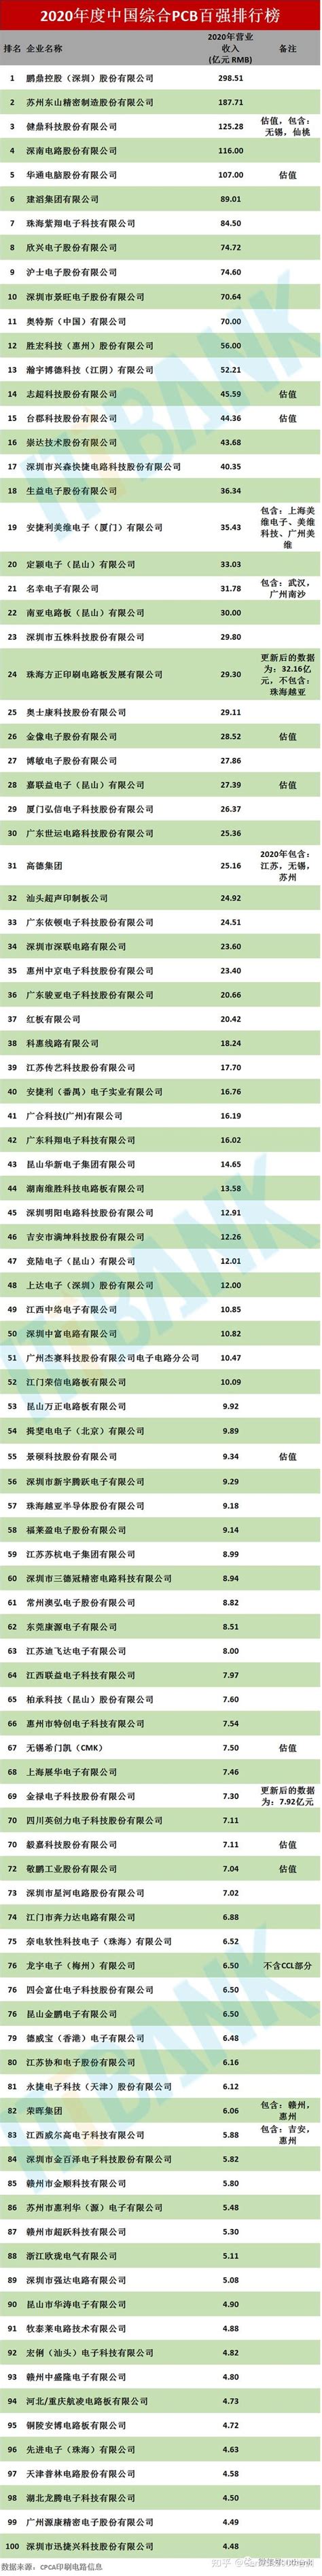 中国pcb百强企业排名